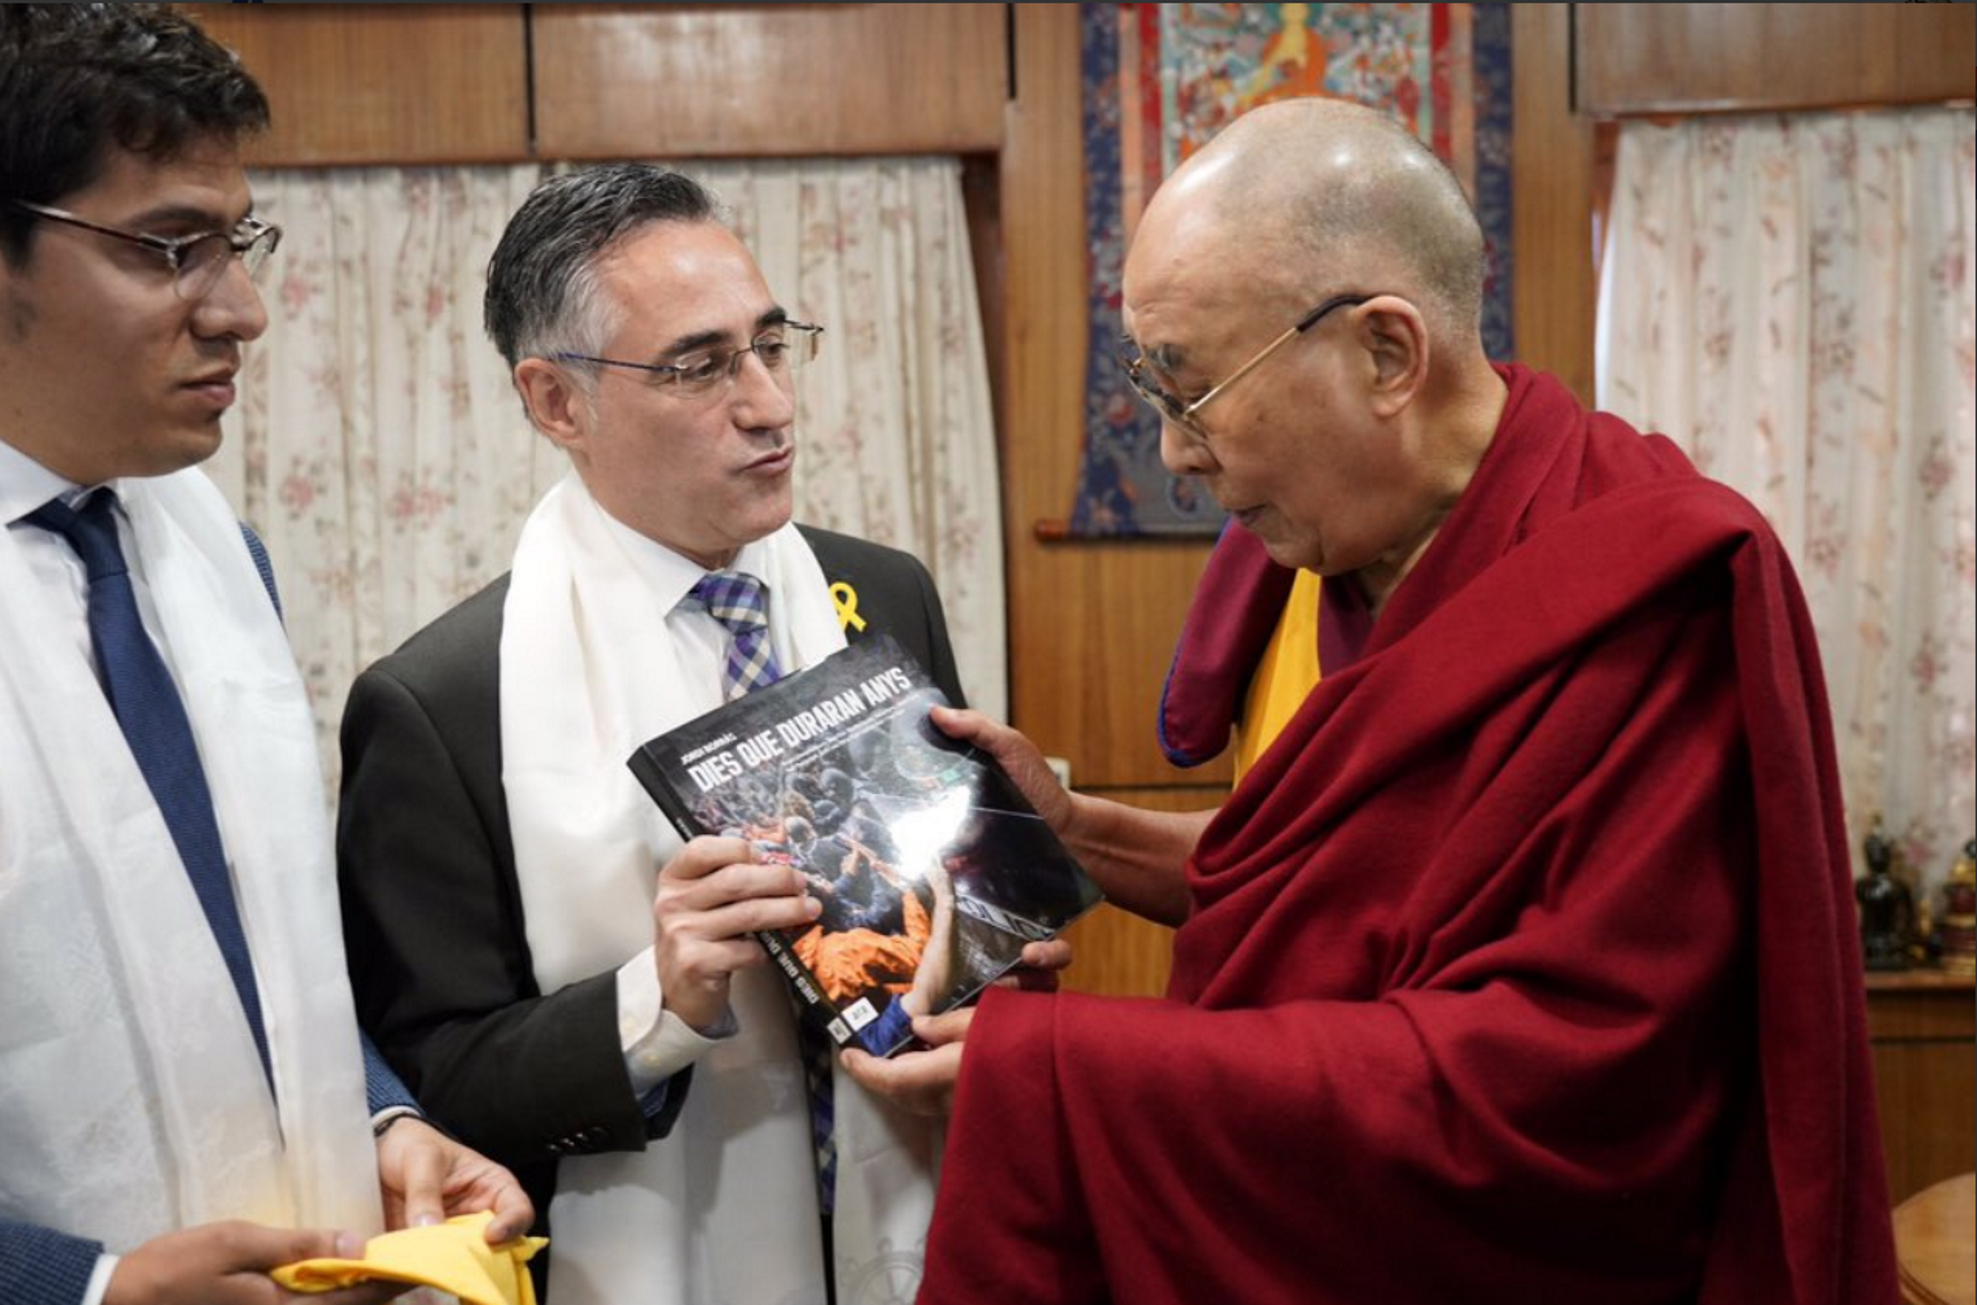 Tremosa regala al Dalái Lama un libro sobre el referéndum del 1-O